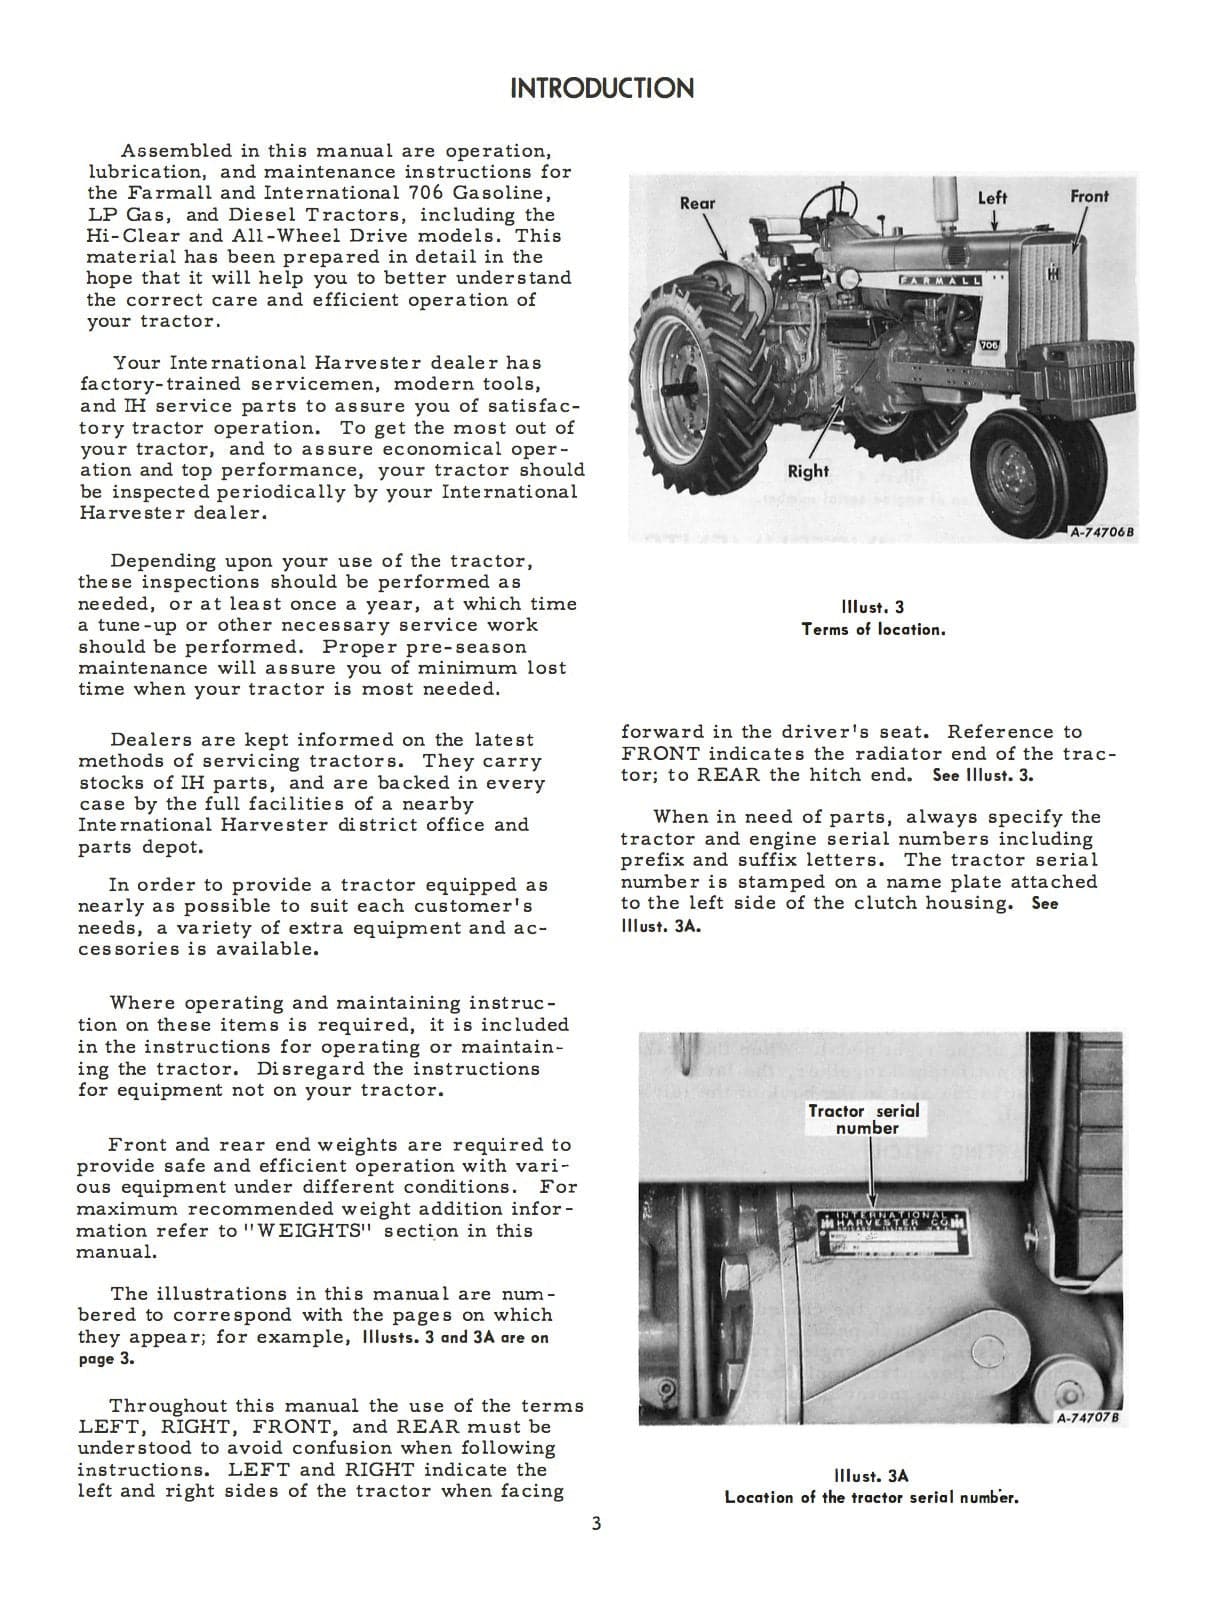 International 706 Tractors - Operator's Manual - Ag Manuals - A Provider of Digital Farm Manuals - 2